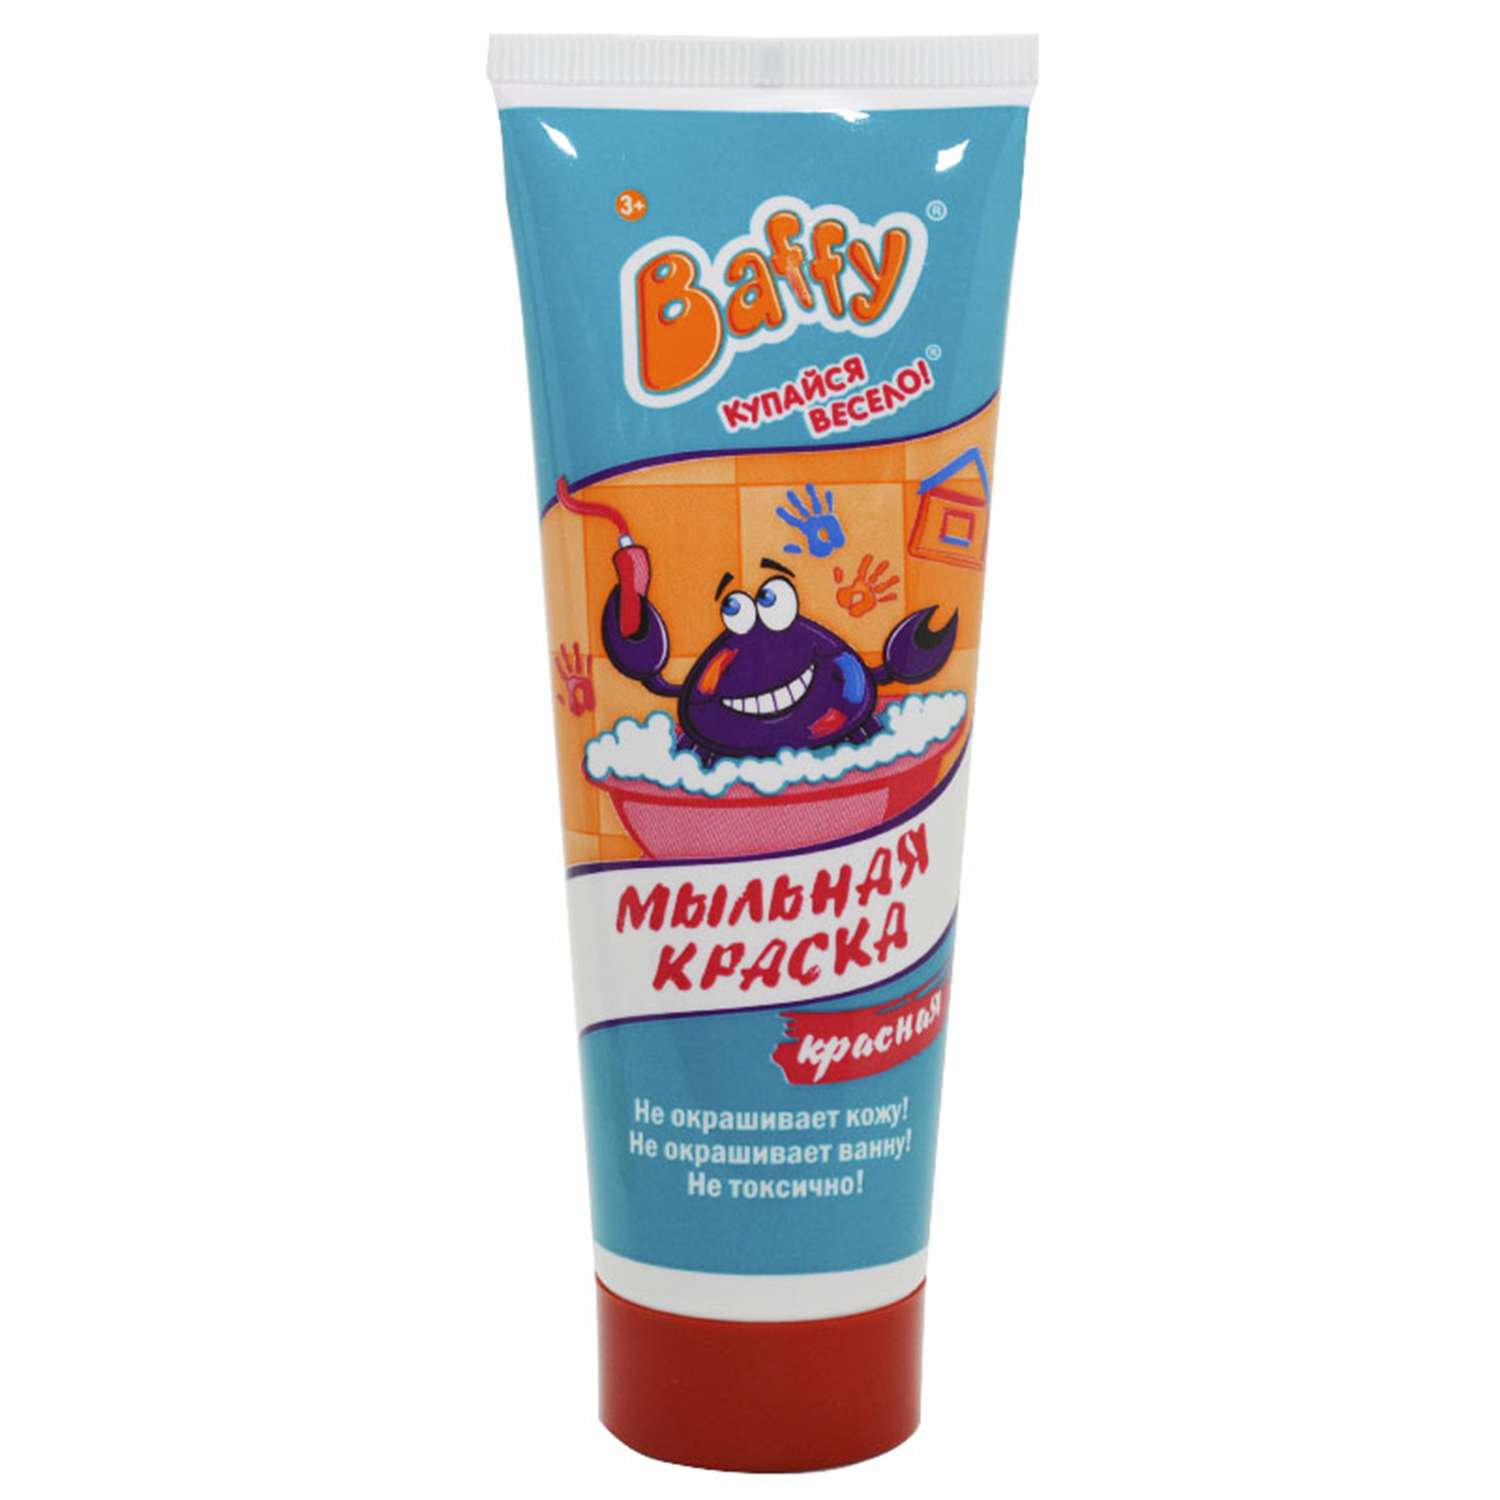 Мыльная краска Baffy для ванны в ассортименте - фото 15